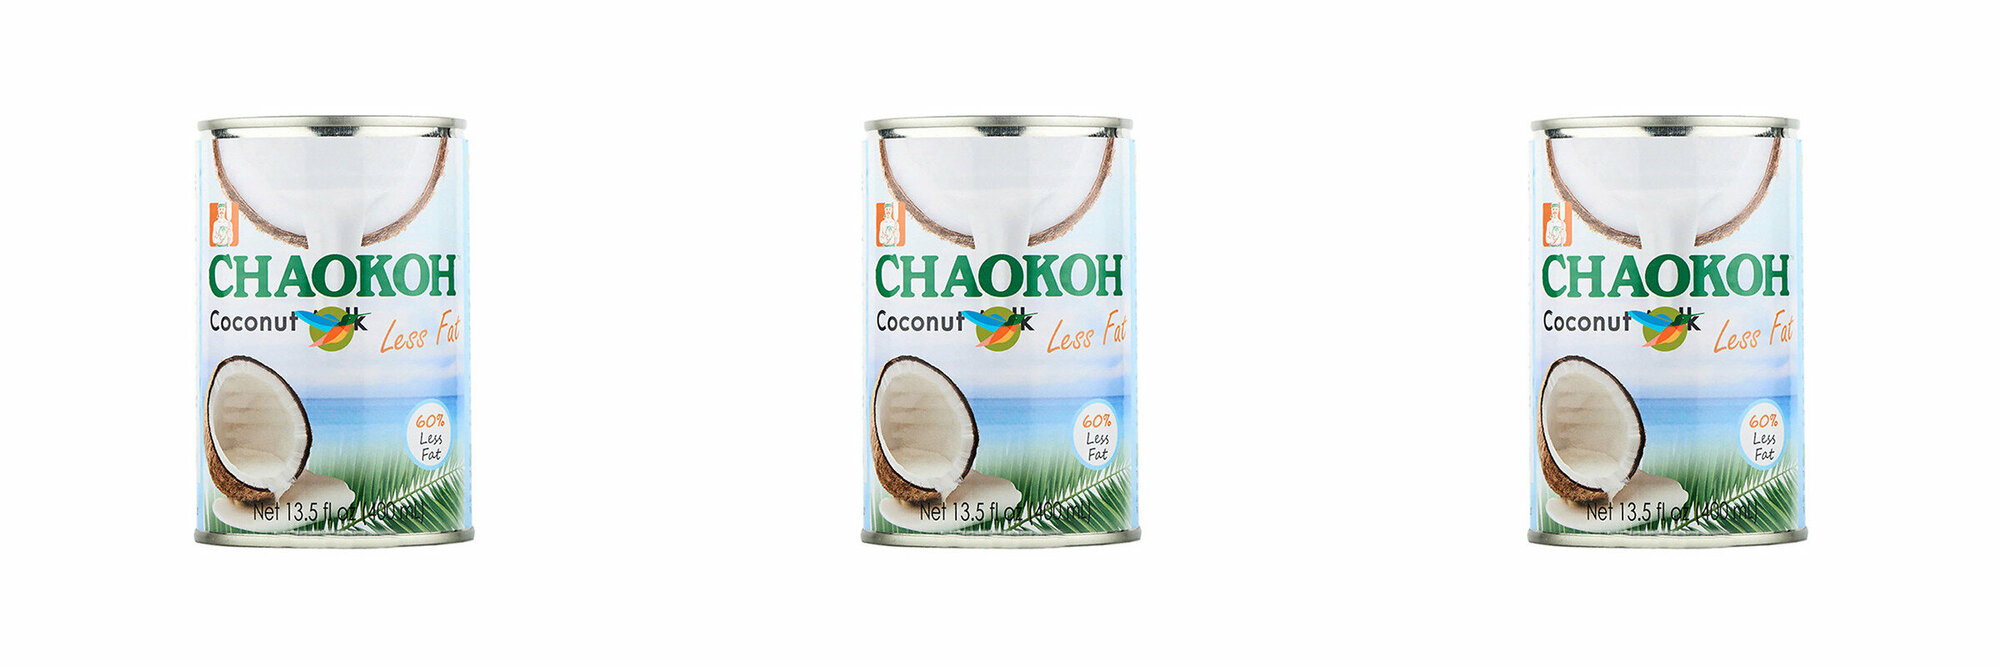 Chaokoh Кокосовое молоко Less Fat, 400 мл, 3 шт